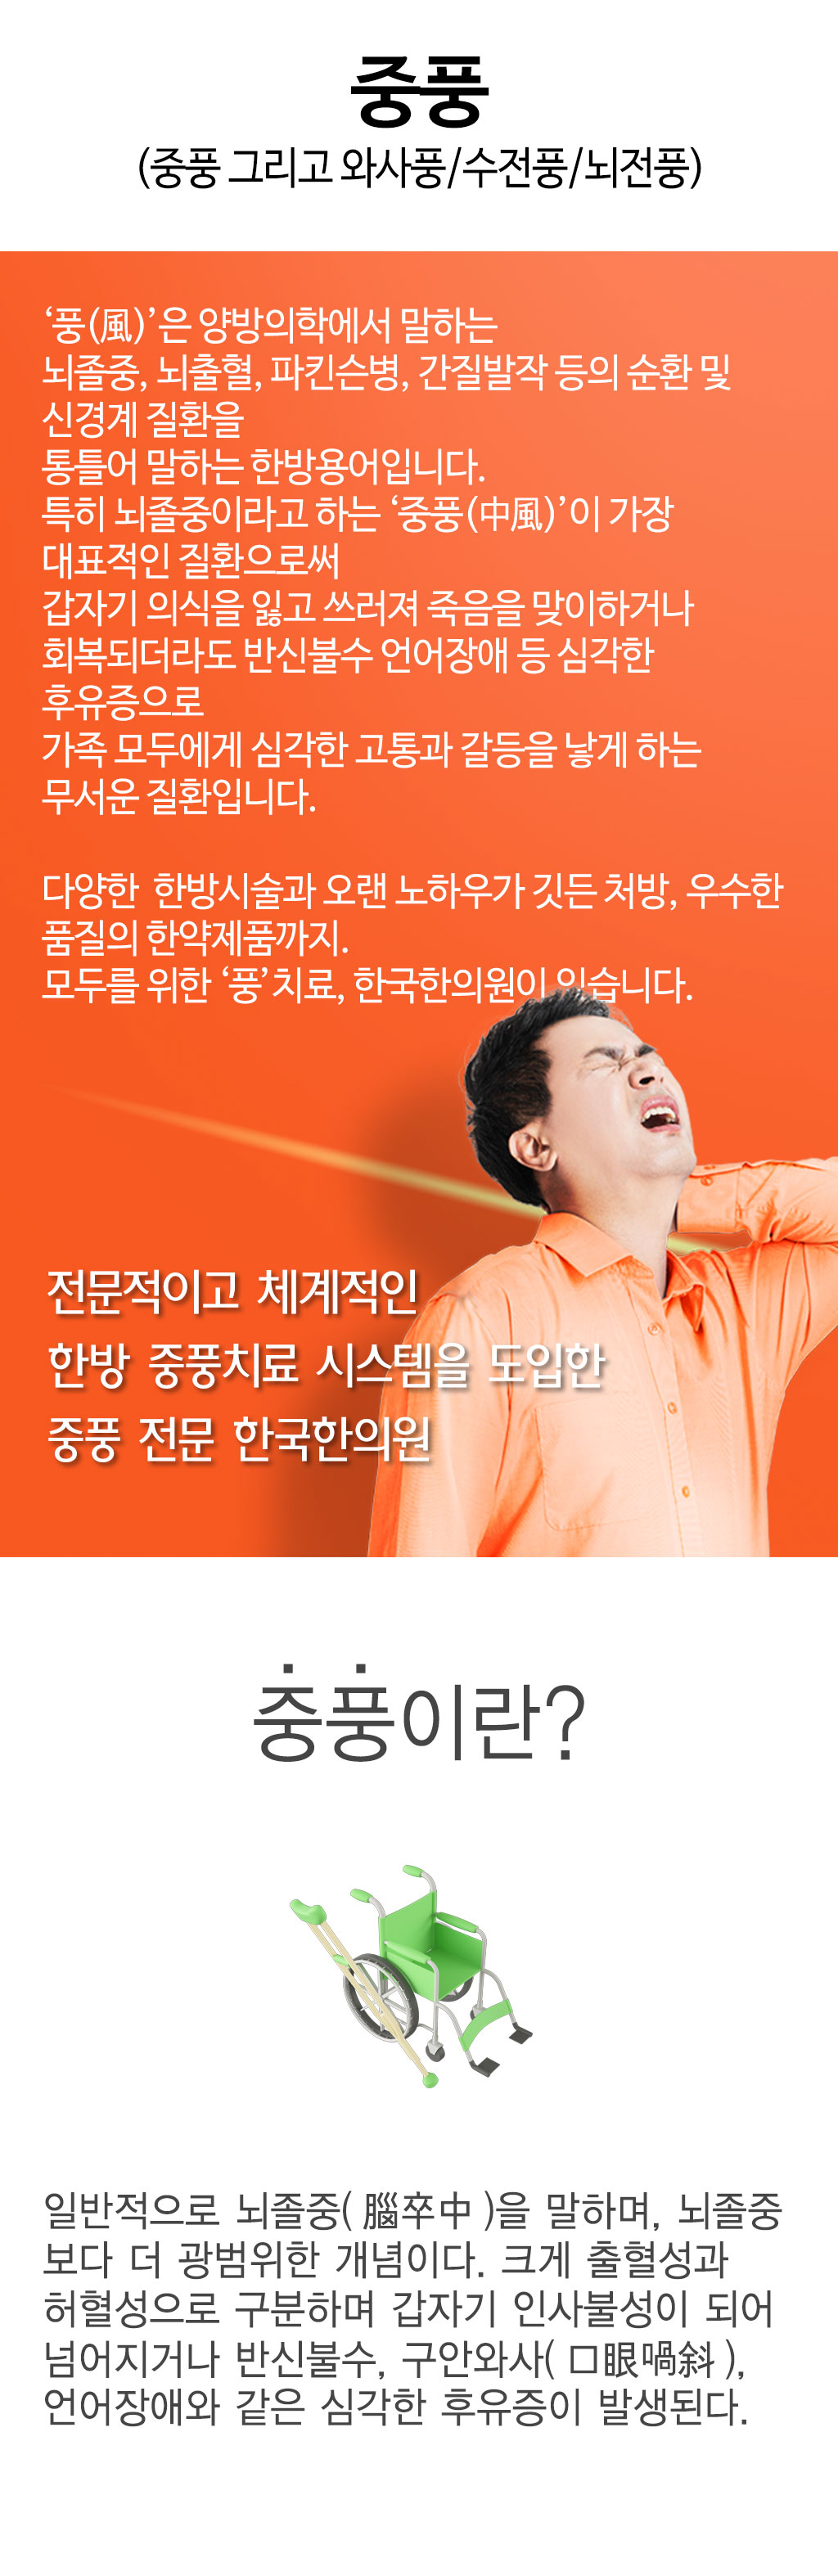 한국한의원, 한국한의원 중풍 클리닉, 중풍, 와사풍, 수전풍, 뇌전풍